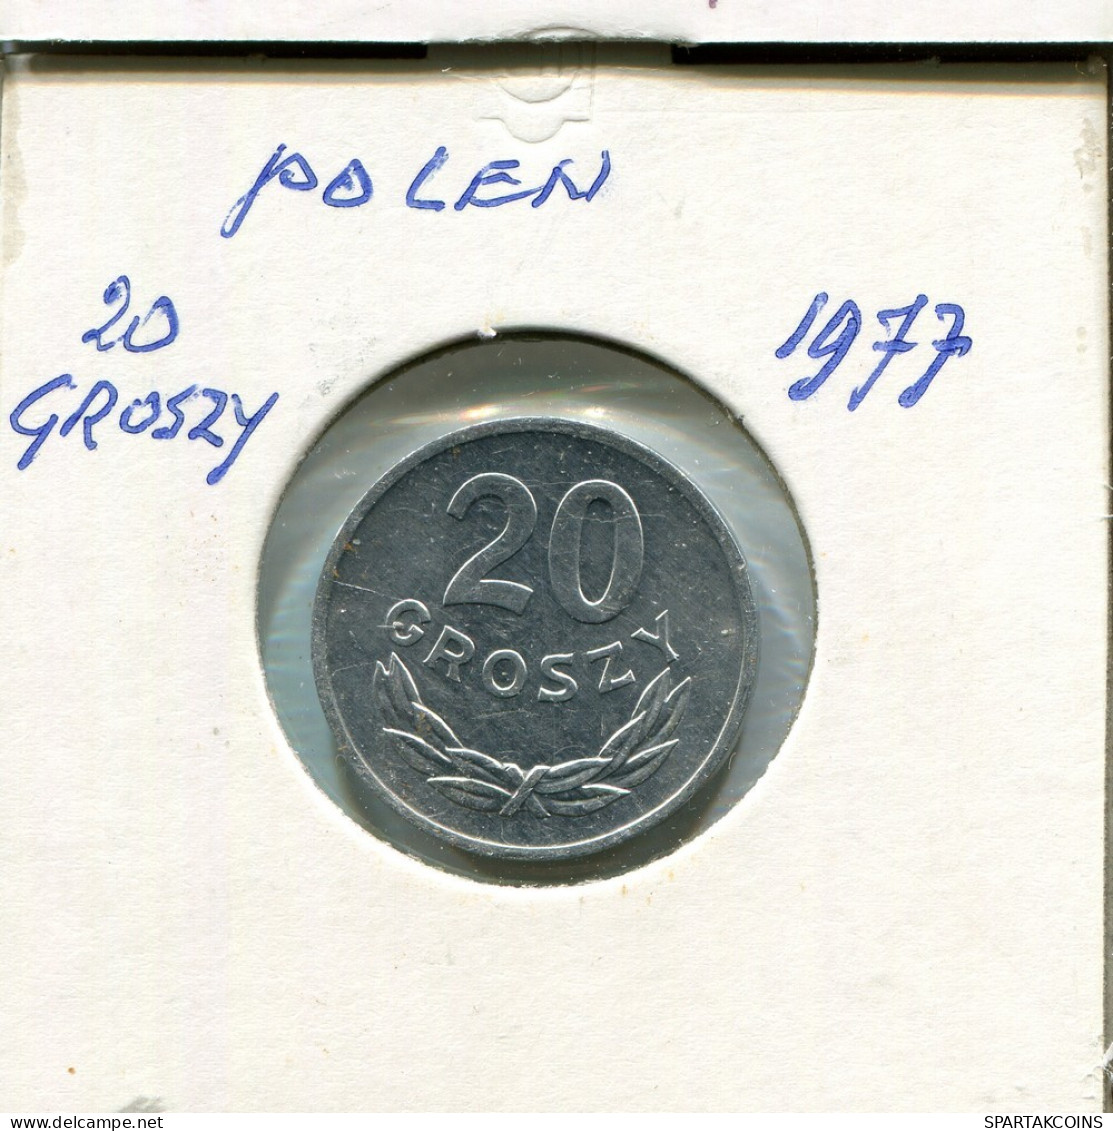 20 GROSZY 1977 POLAND Coin #AR776.U.A - Polen